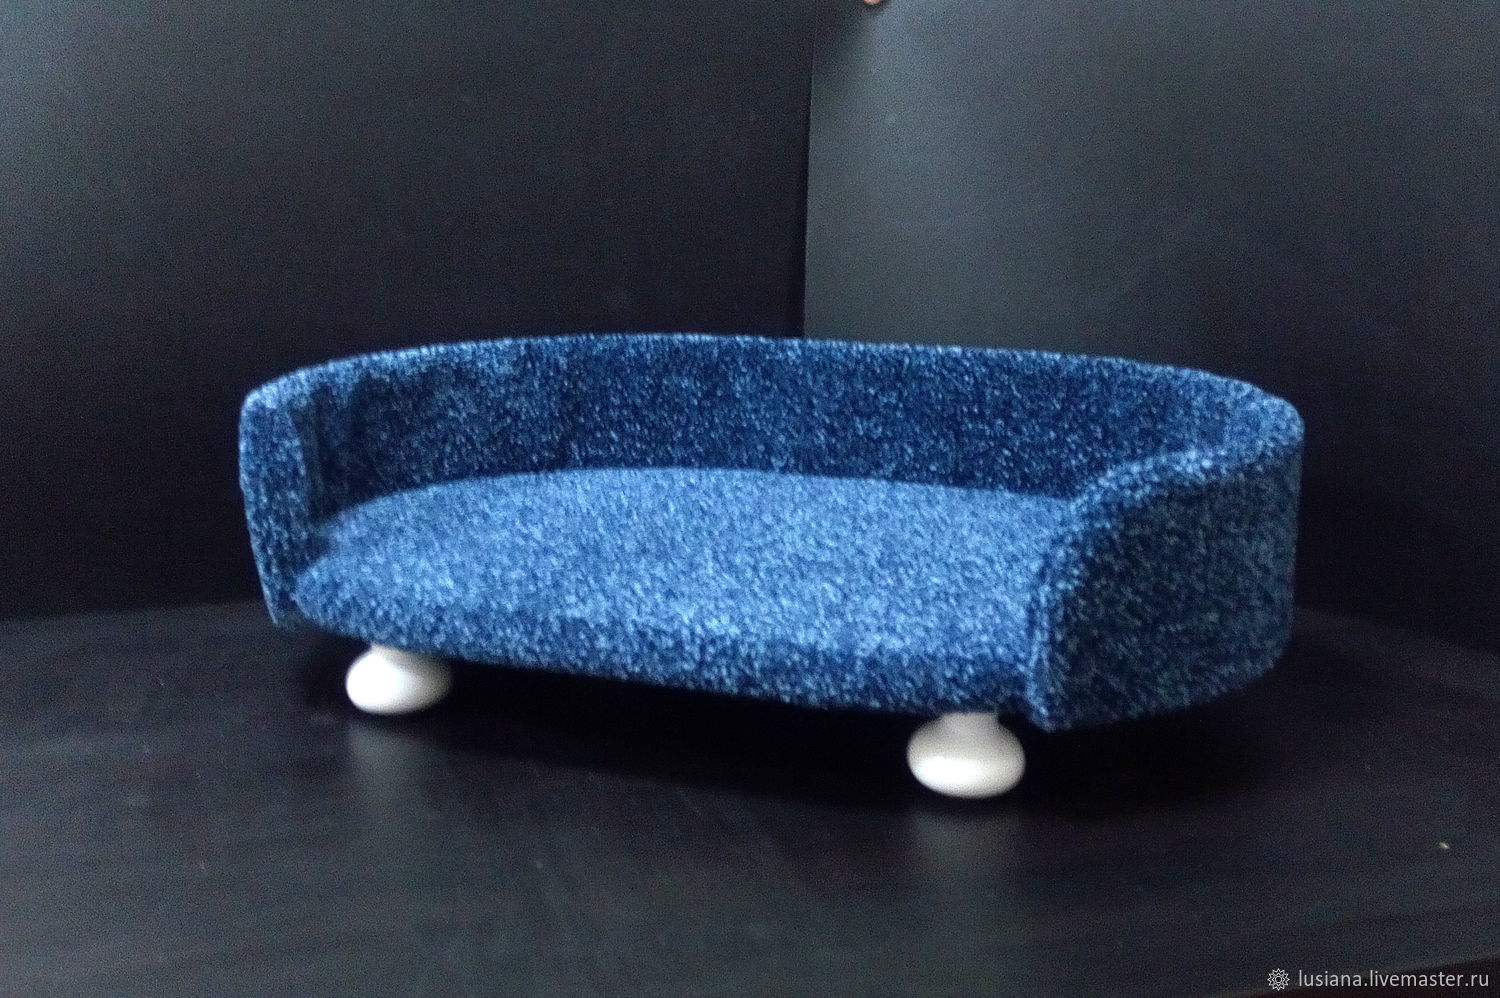 диван для котят своими руками